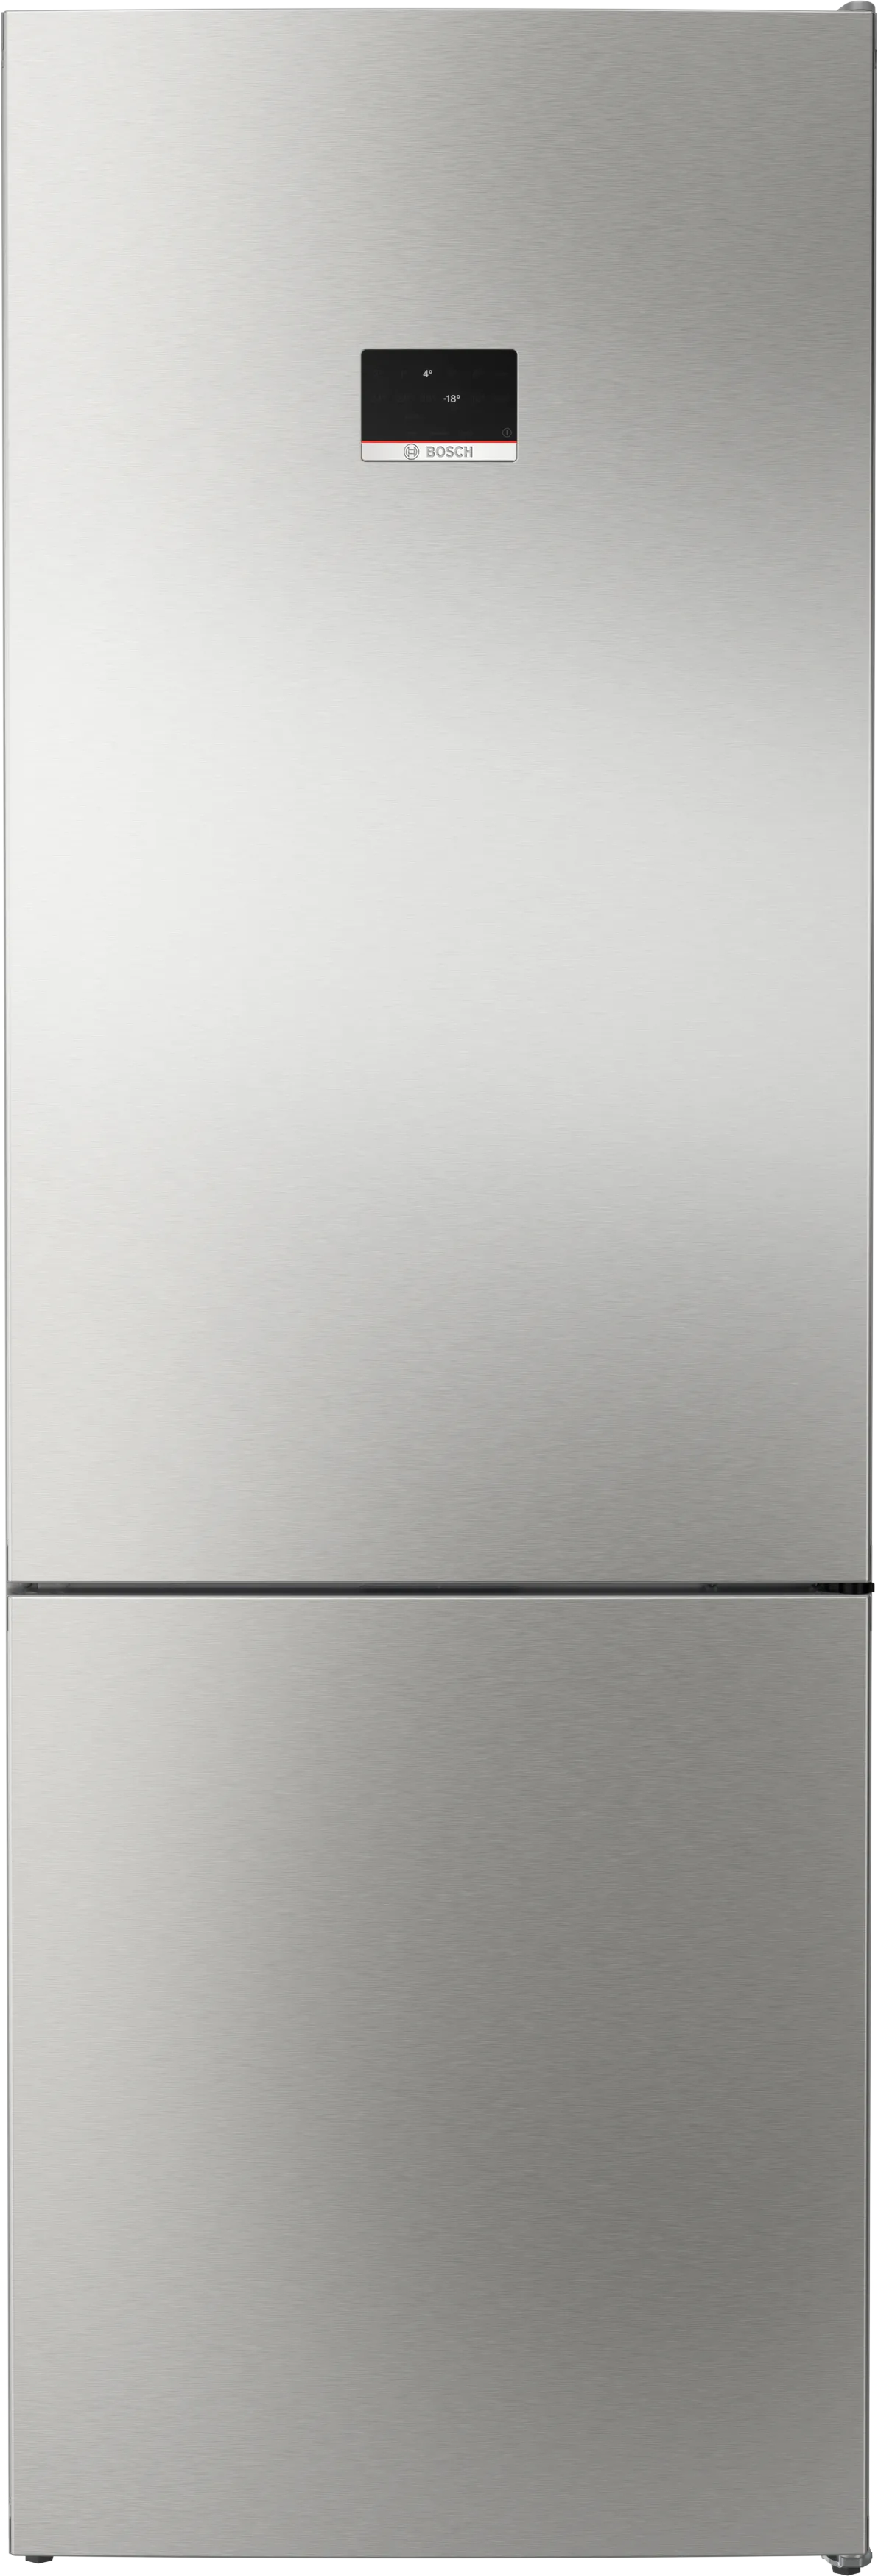 Серия 4 Отдельно стоящий холодильник с нижней морозильной камерой 203 x 70 cm Нерж. ст. легкой очистки 